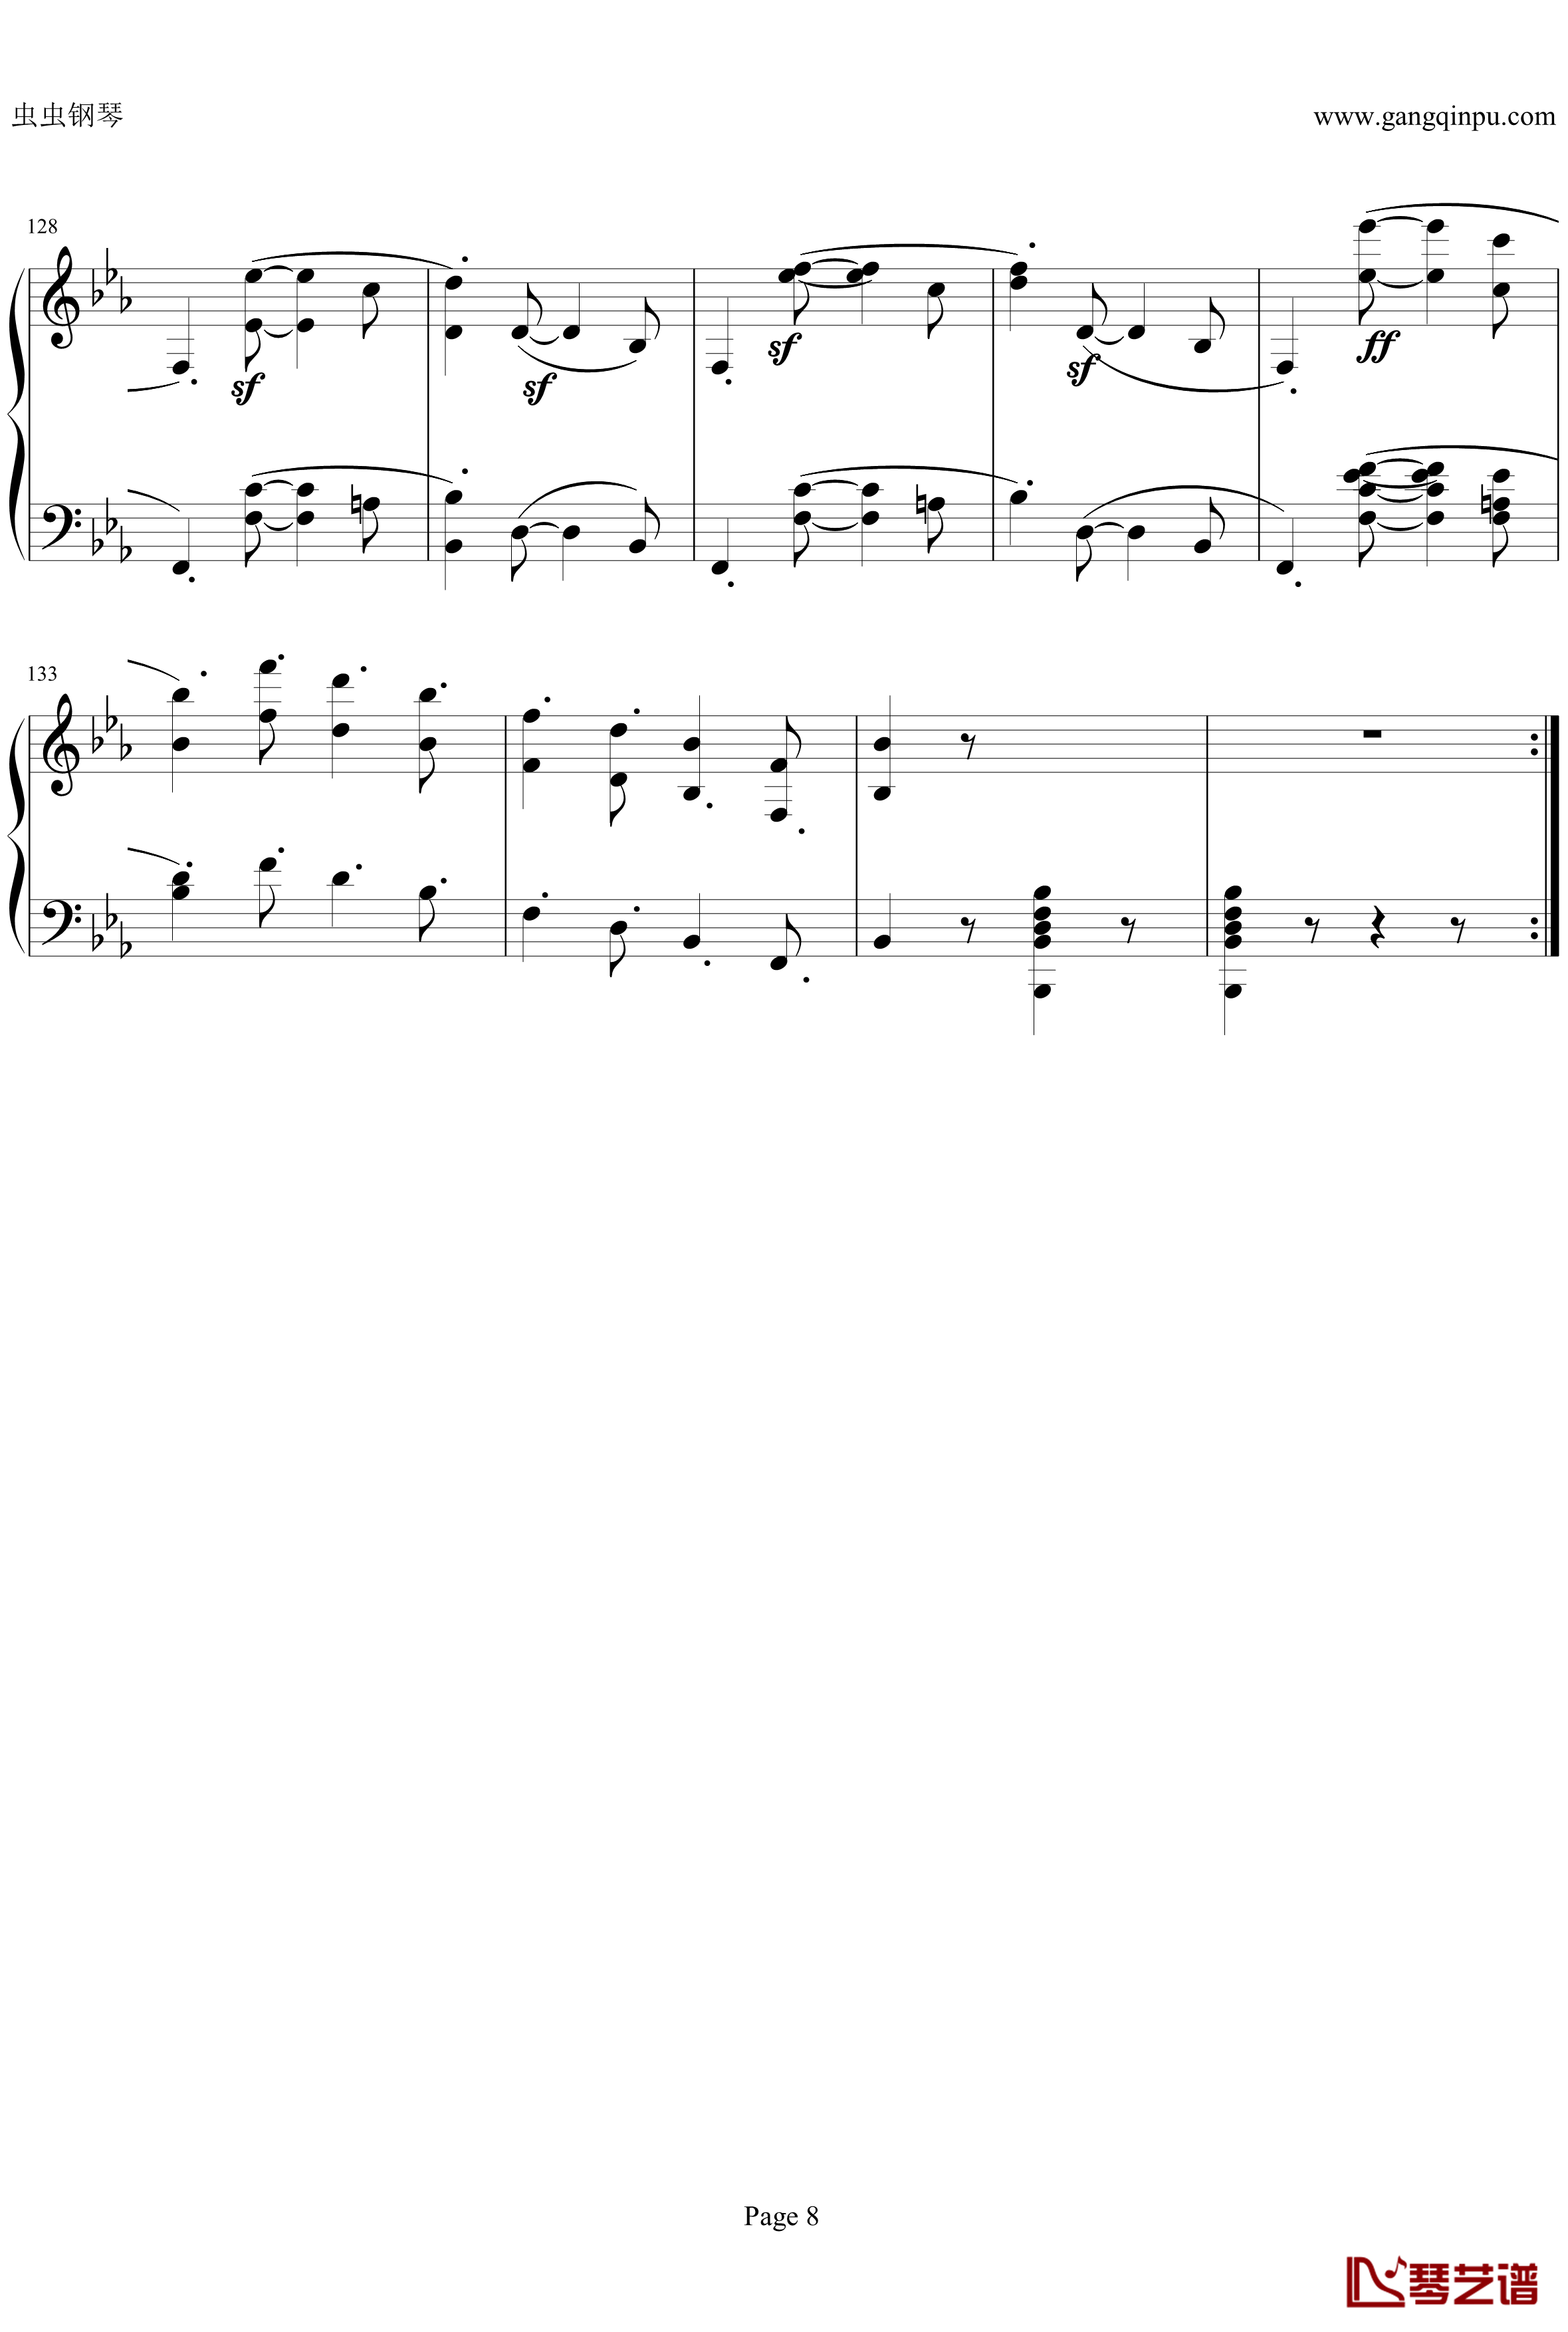 第四钢琴奏鸣曲Op7钢琴谱-贝多芬-beethoven8